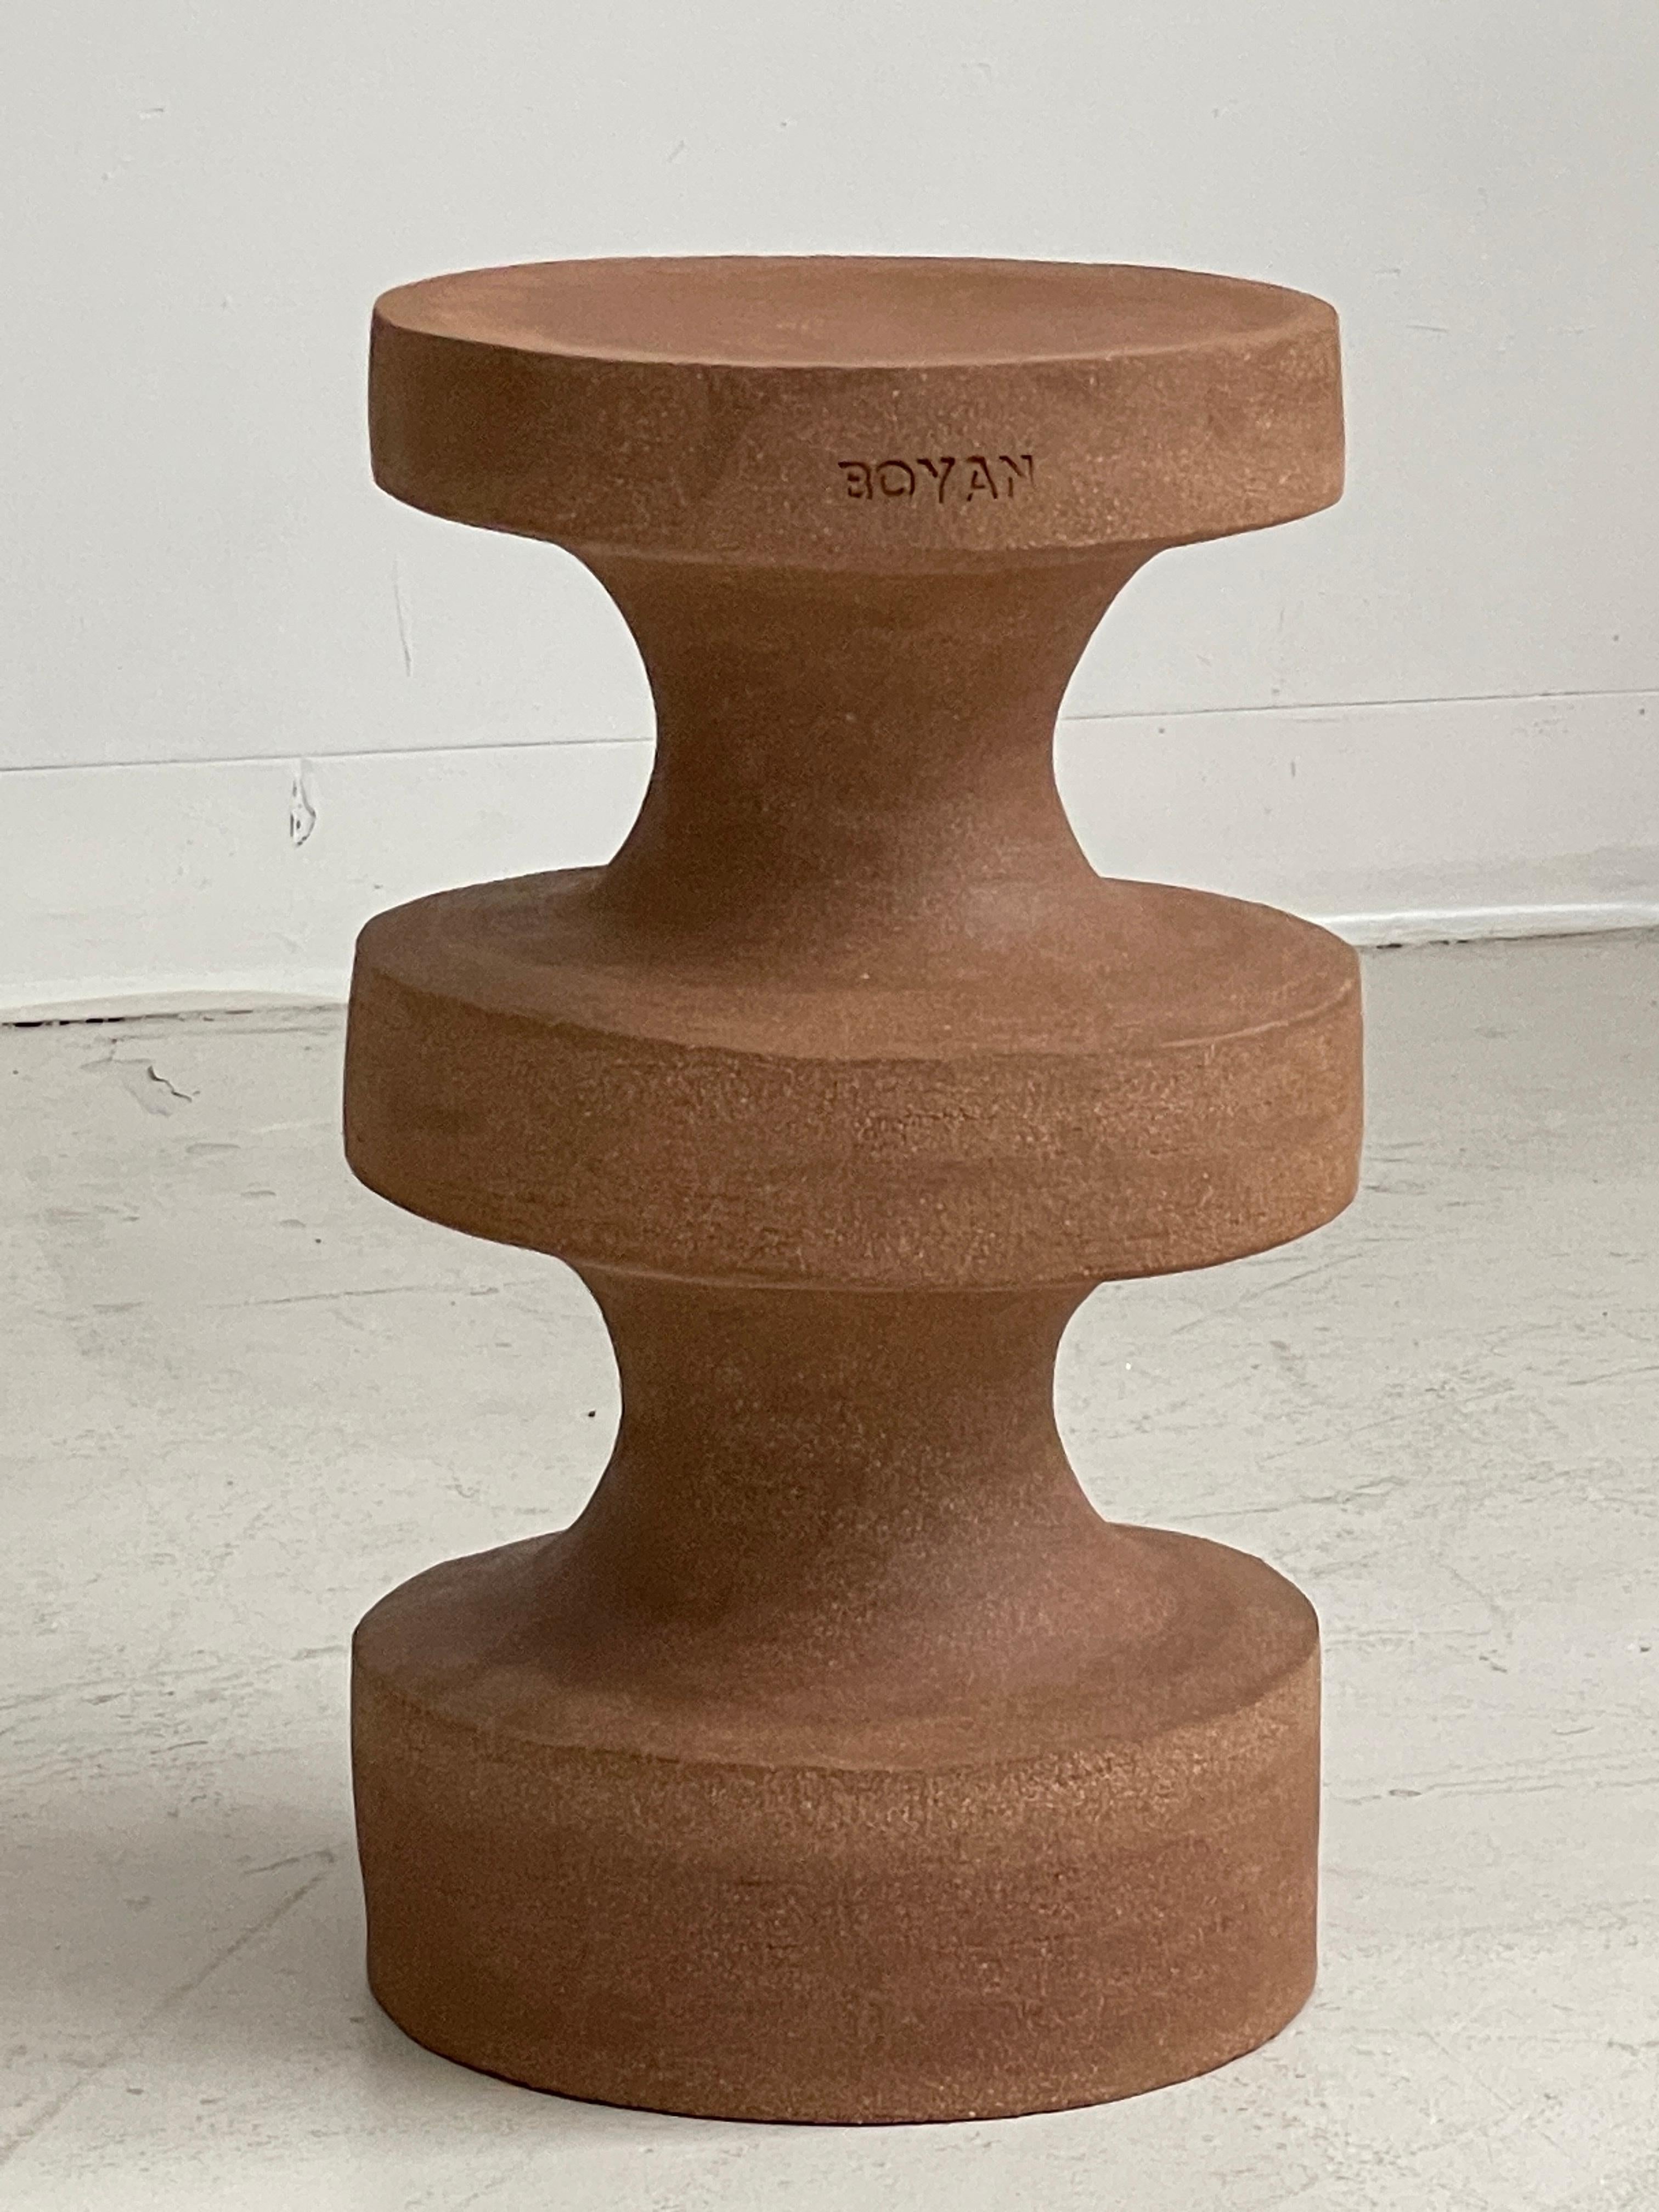 La table d'appoint Boyan de Zeynep Boyan
Dimensions : D 25,4 x H 43,18 cm
Matériaux : Terre cuite en grès.
Cet article est fabriqué à la main. En raison de la nature du support et du toucher humain, de légères variations sont à prévoir. 

La TABLE